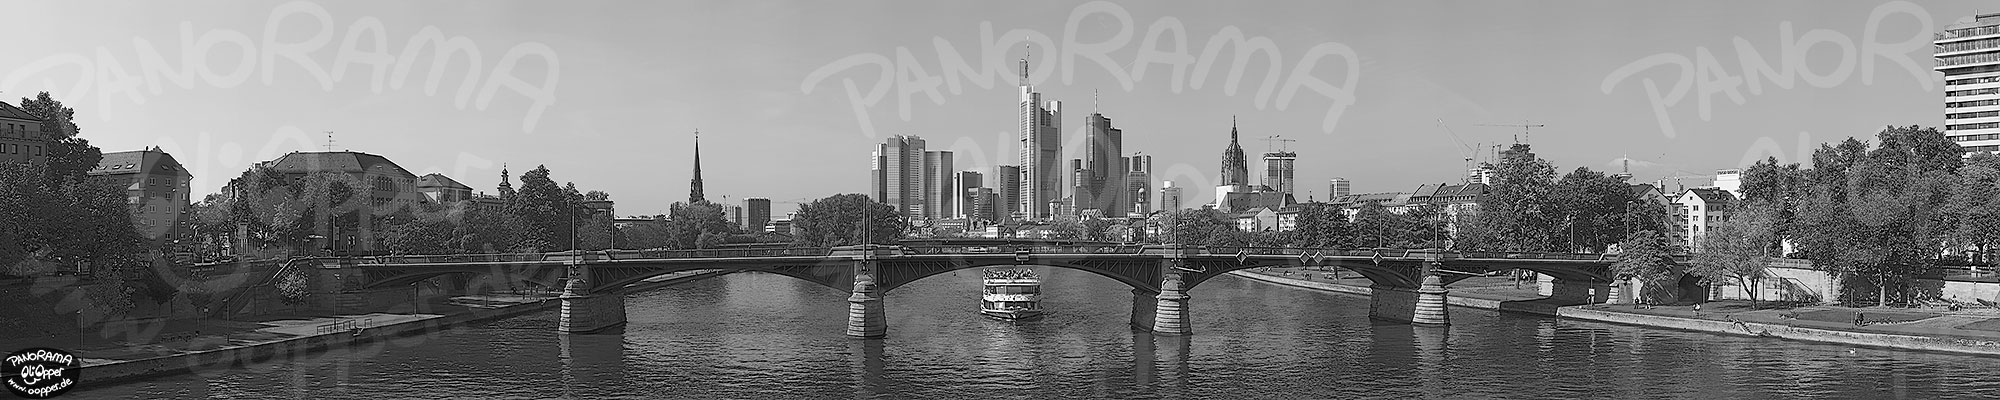 Frankfurt - schwarz/wei - Tag - p8399 - (c) by Oliver Opper